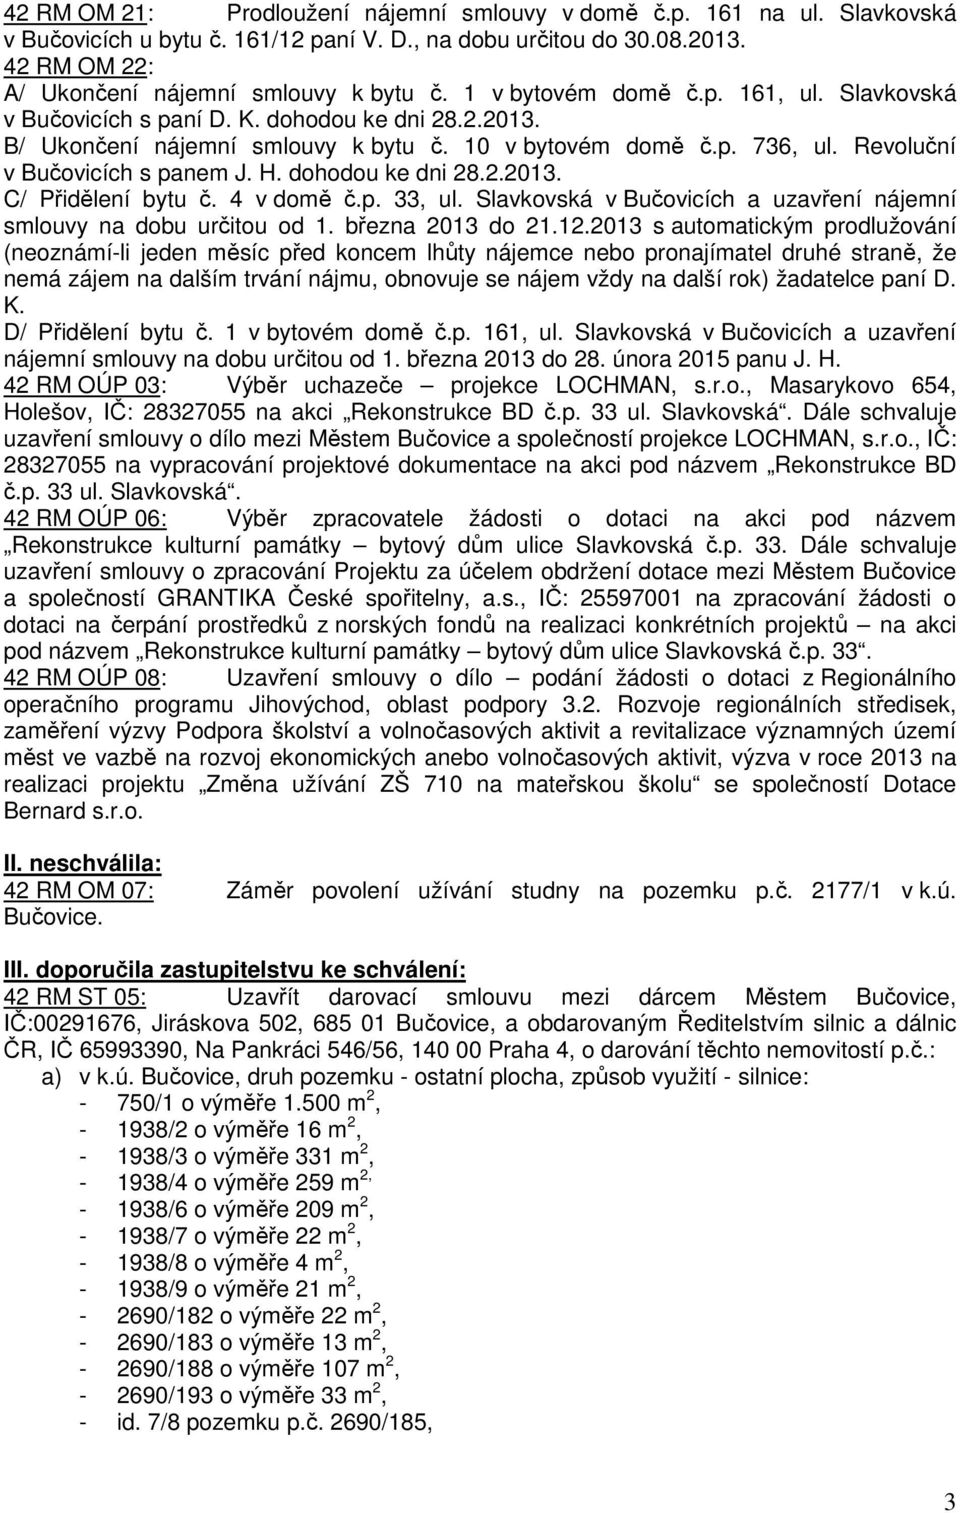 dohodou ke dni 28.2.2013. C/ Přidělení bytu č. 4 v domě č.p. 33, ul. Slavkovská v Bučovicích a uzavření nájemní smlouvy na dobu určitou od 1. března 2013 do 21.12.